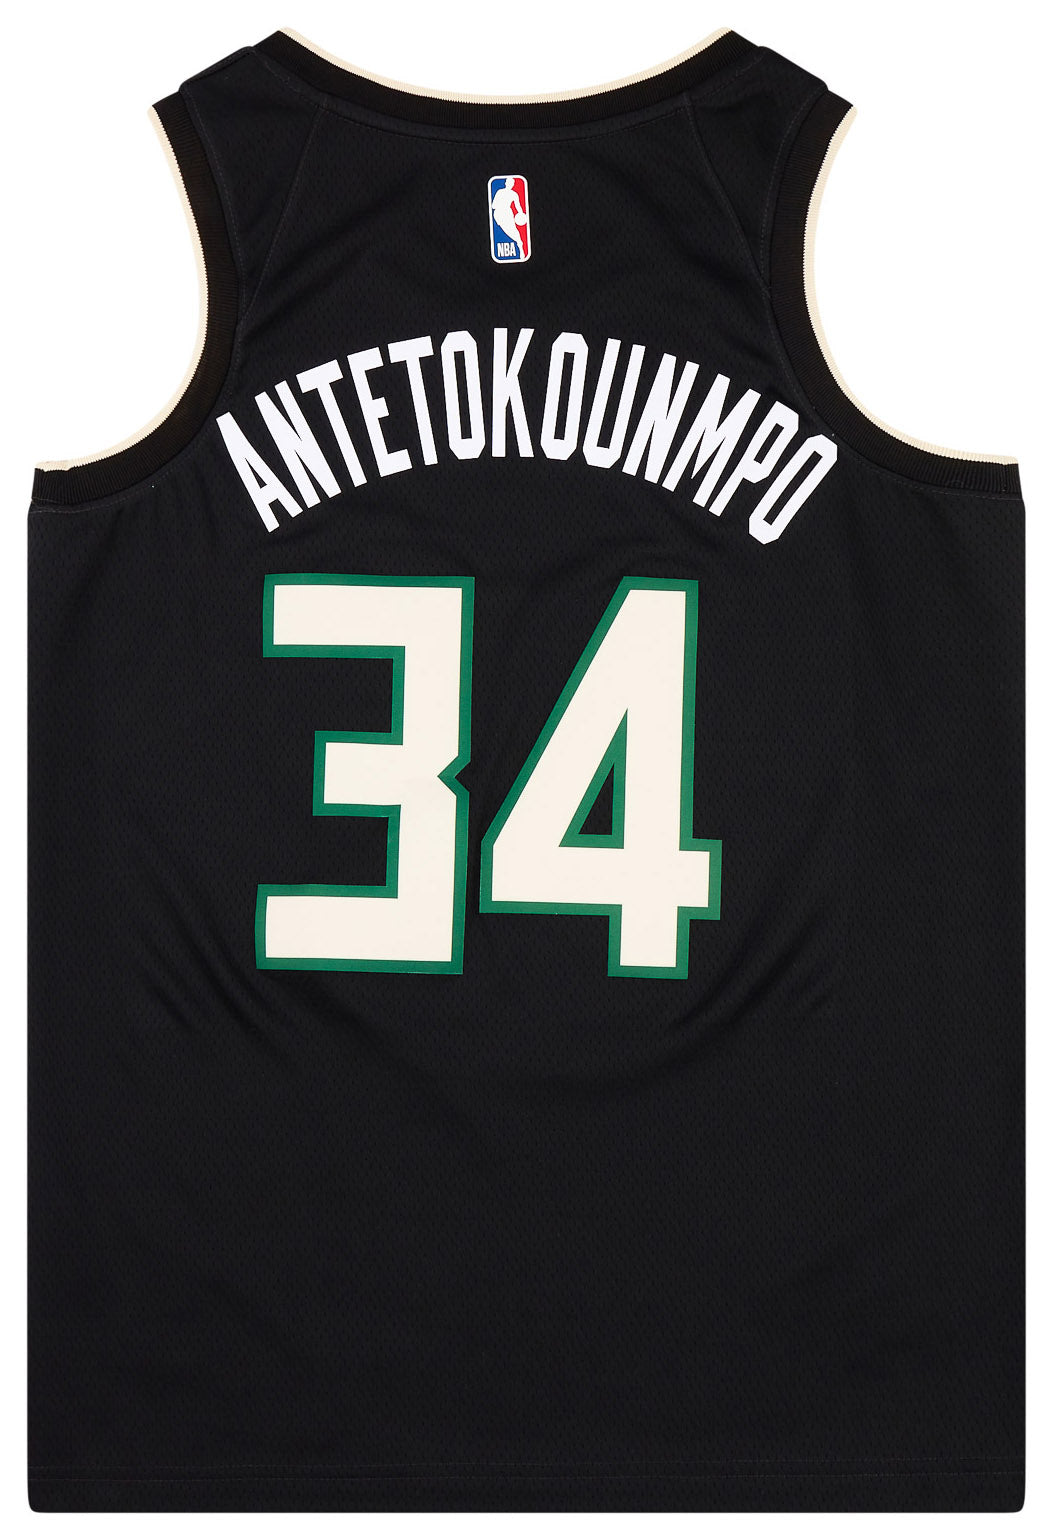 Nike Men's Milwaukee Bucks Giannis Antetokounmpo #34 White Dri-Fit Swingman Jersey, XXL